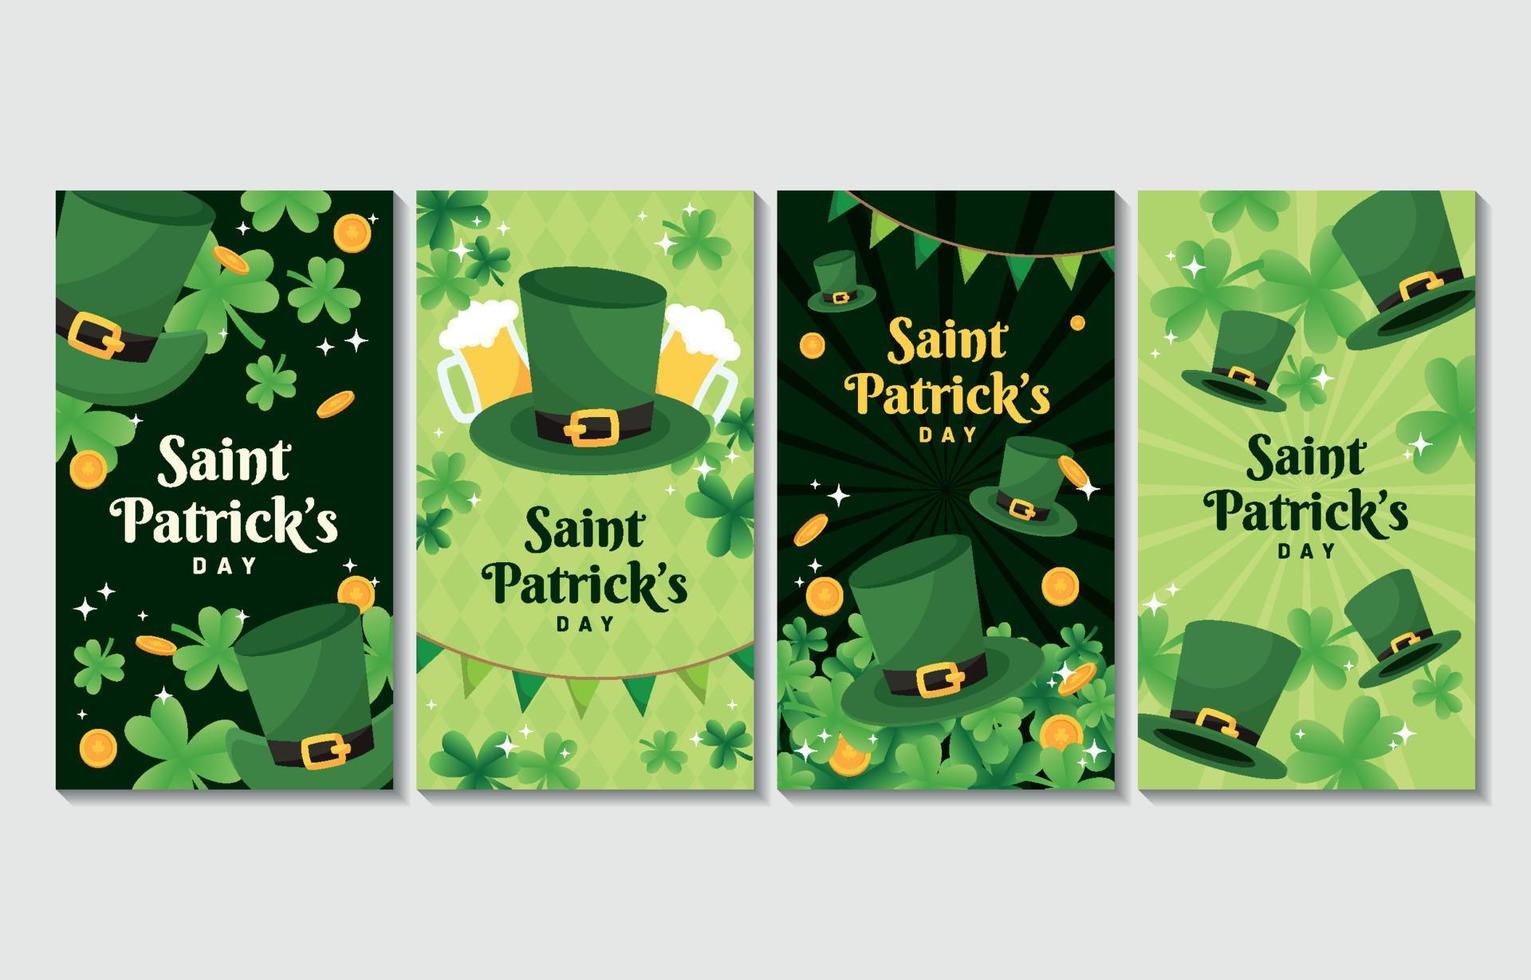 Saint Patricks hatt och klöver sociala medier berättelse i grönt schema färg vektor